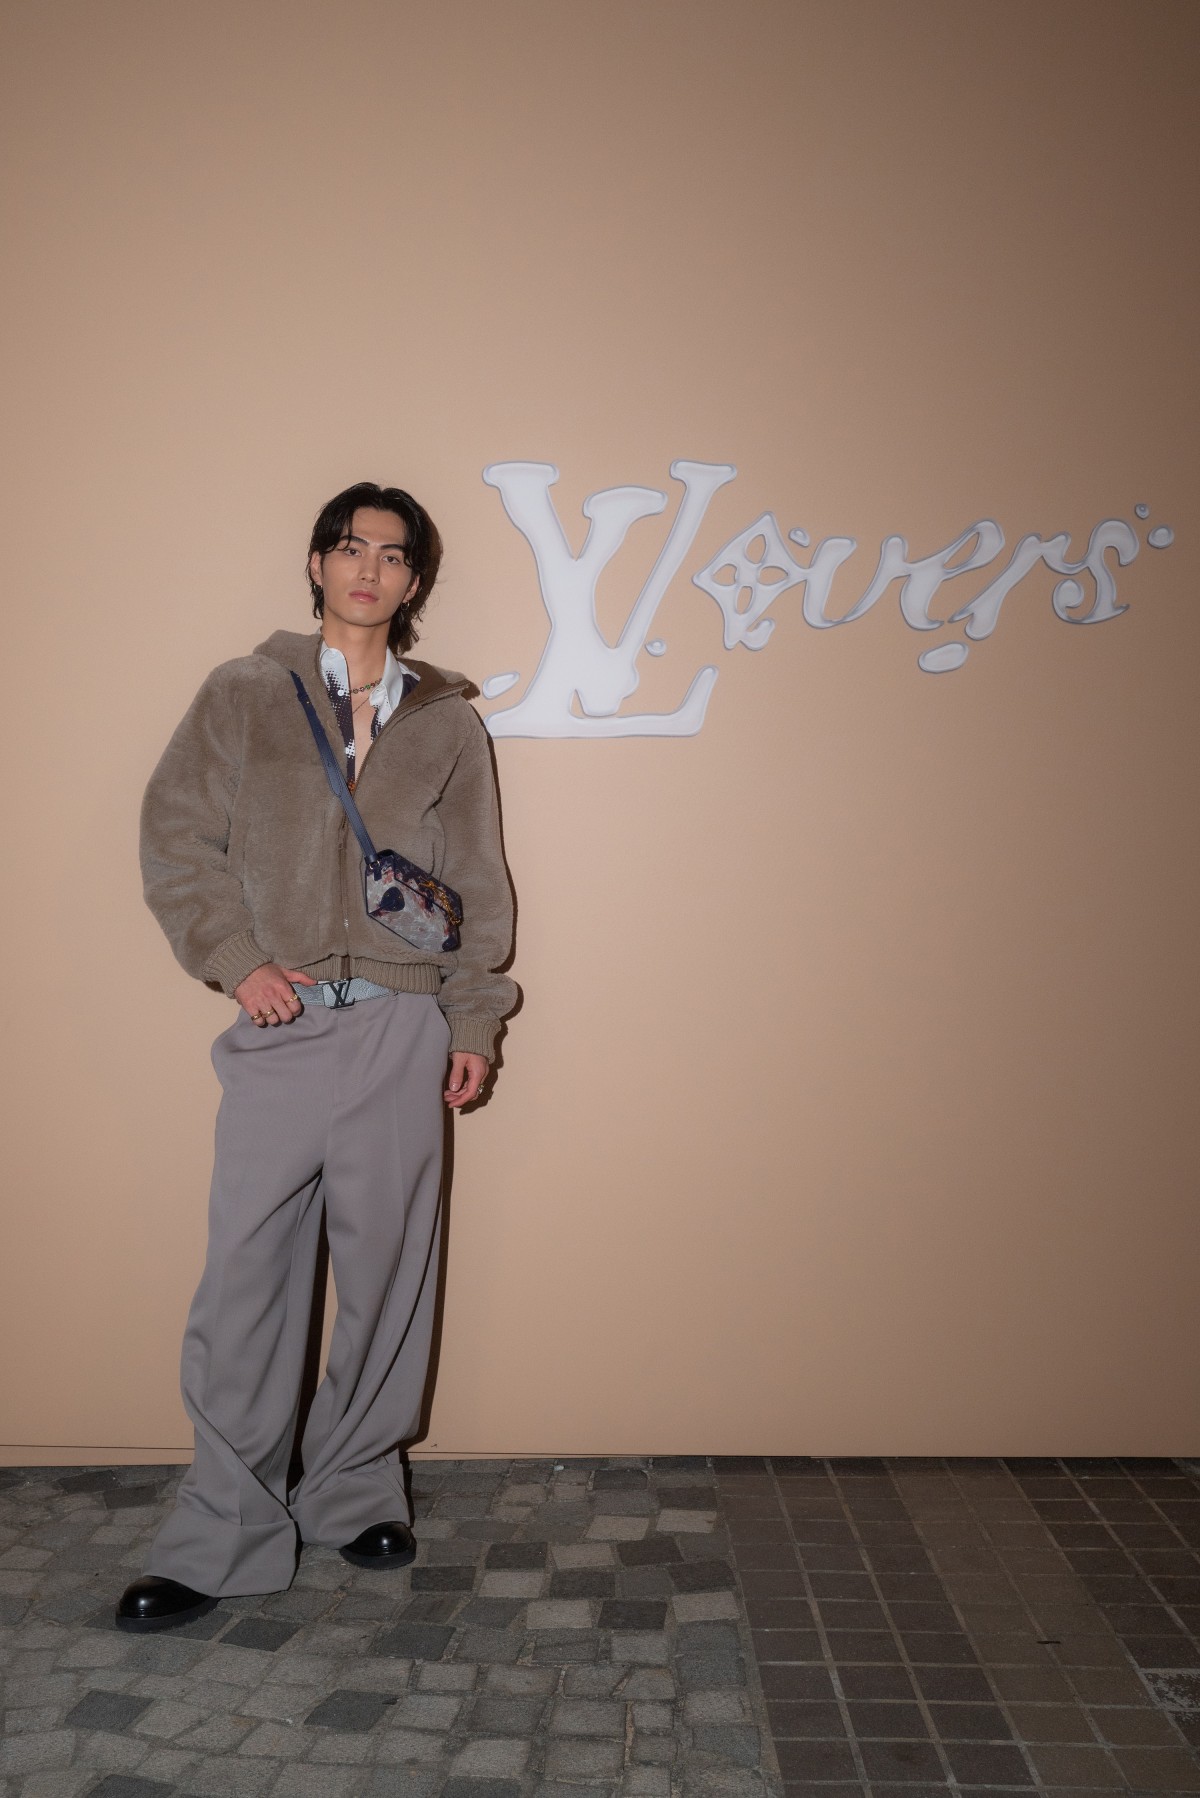 画像・写真 | 平野紫耀、ルイ・ヴィトンファッションショーに登場「終始魅了されました」 12枚目 | ORICON NEWS